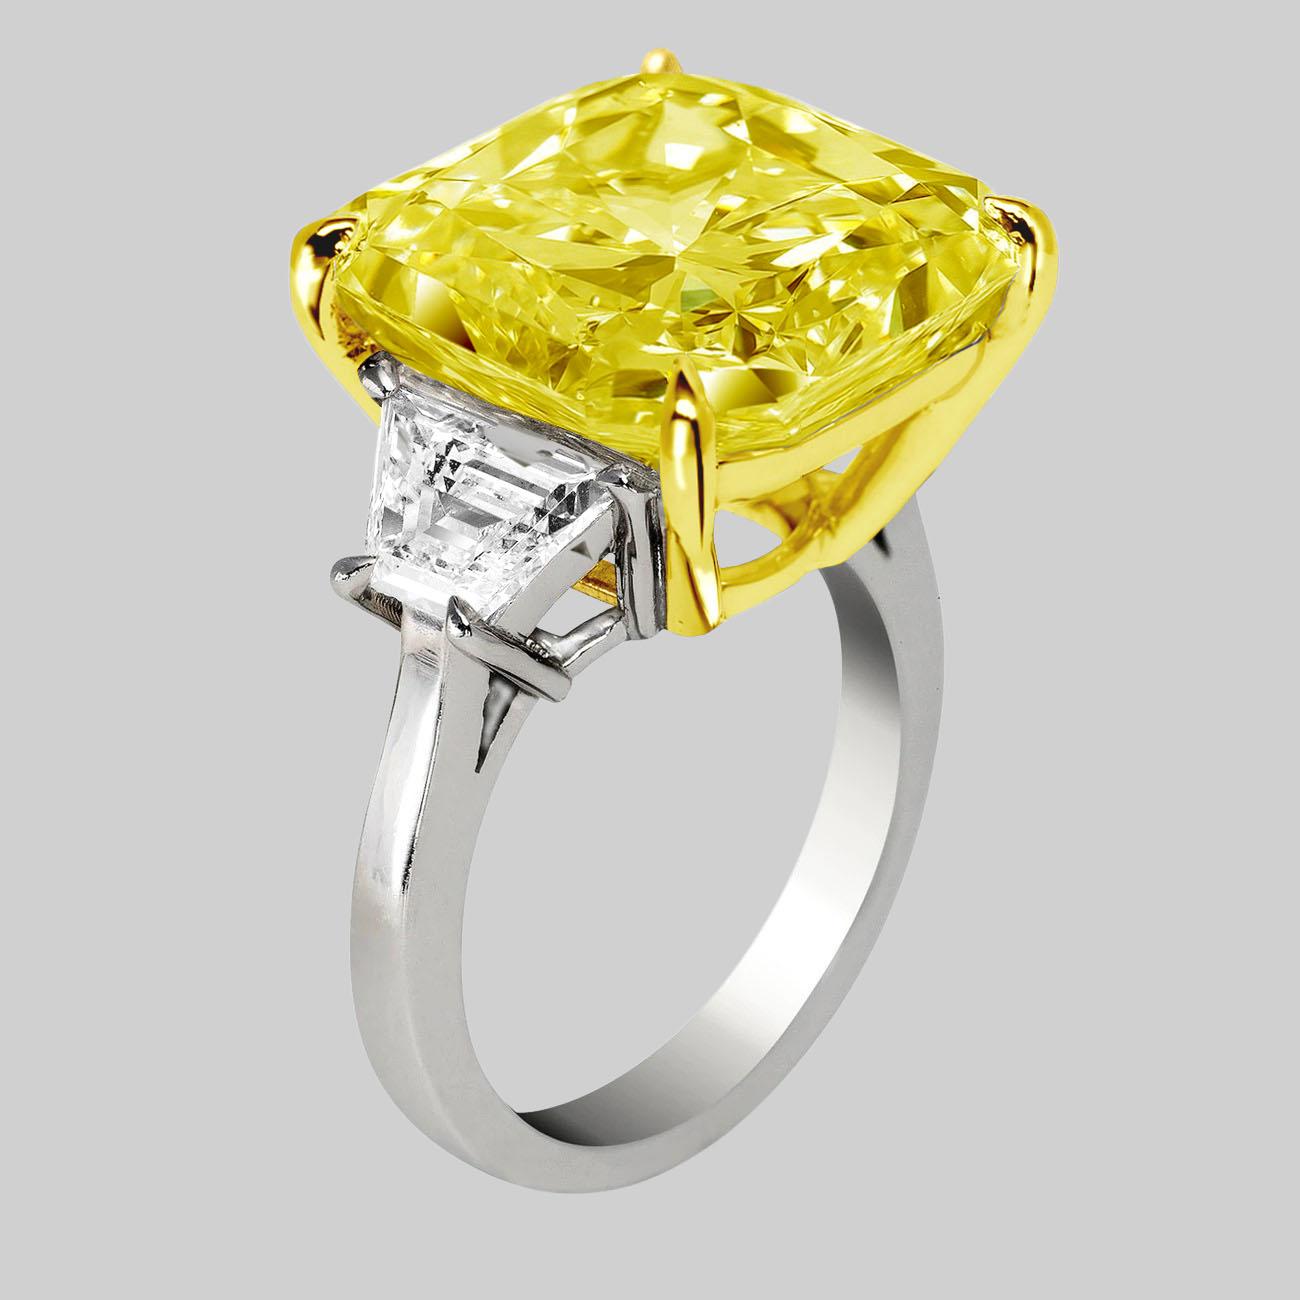 Antinori di Sanpietro fancy yellow color Cushion Cut Engagement Ring et cette bague est la perfection avec un diamant Fancy Yellow Cushion Cut de 6 carats de pureté VVS2, certifié GIA, avec 1 carat en F Color side trapezoid cut diamonds in Platinum